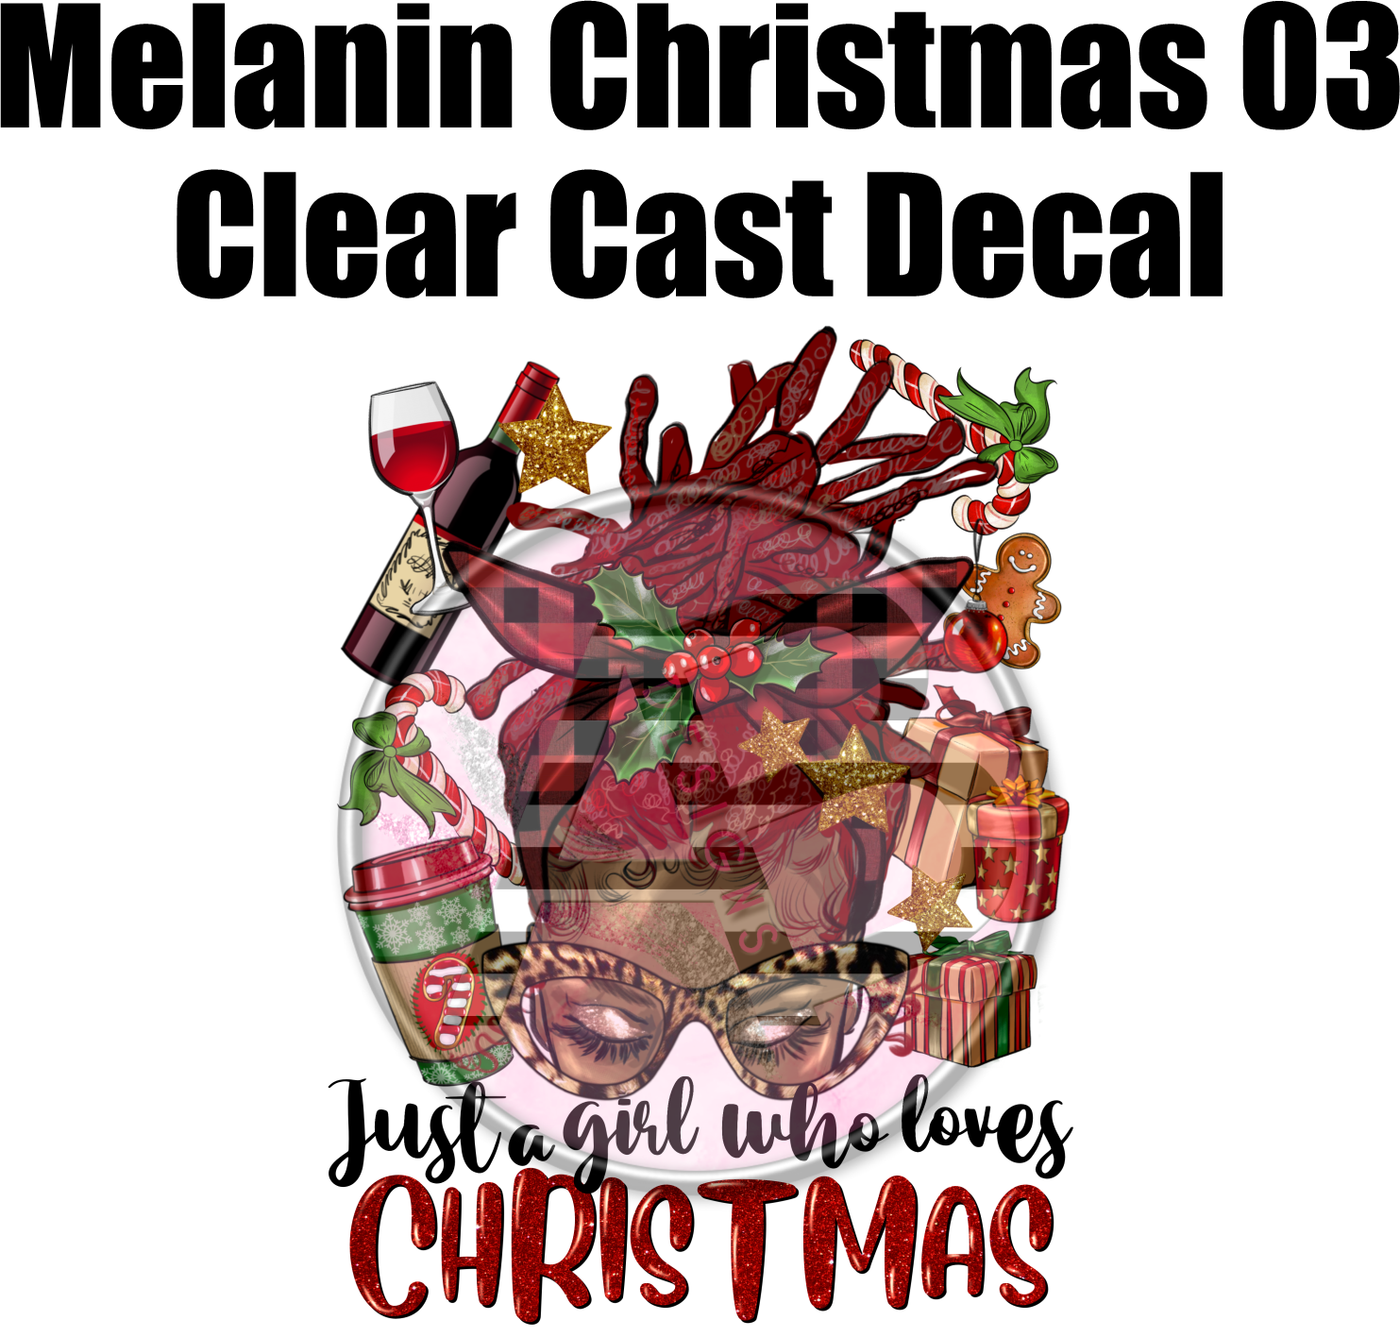 Melanin Christmas 03 - Clear Cast Decal